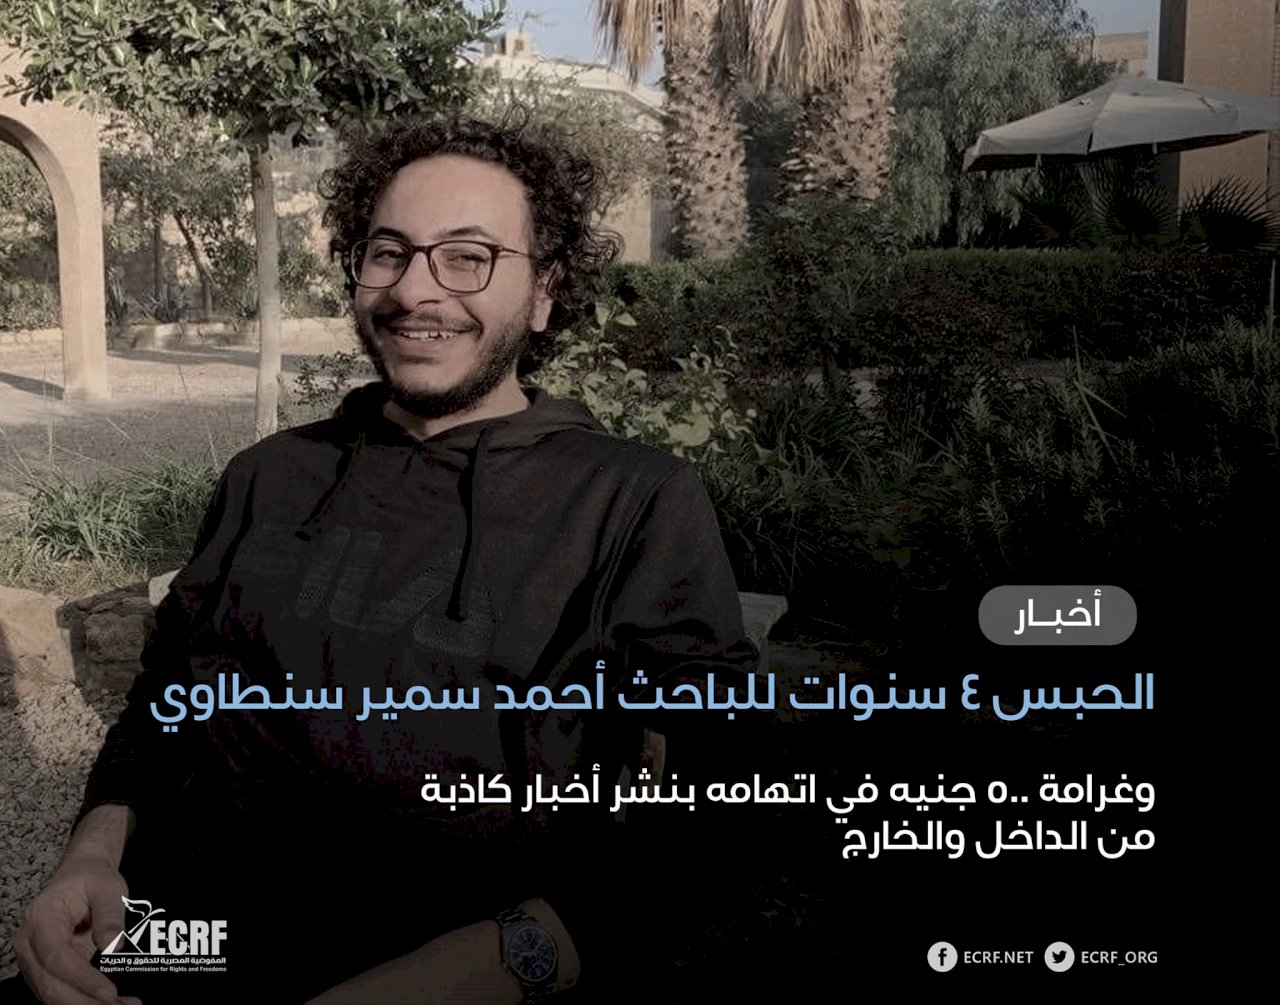 被控散布假消息 研究生薩米爾遭埃及判刑3年